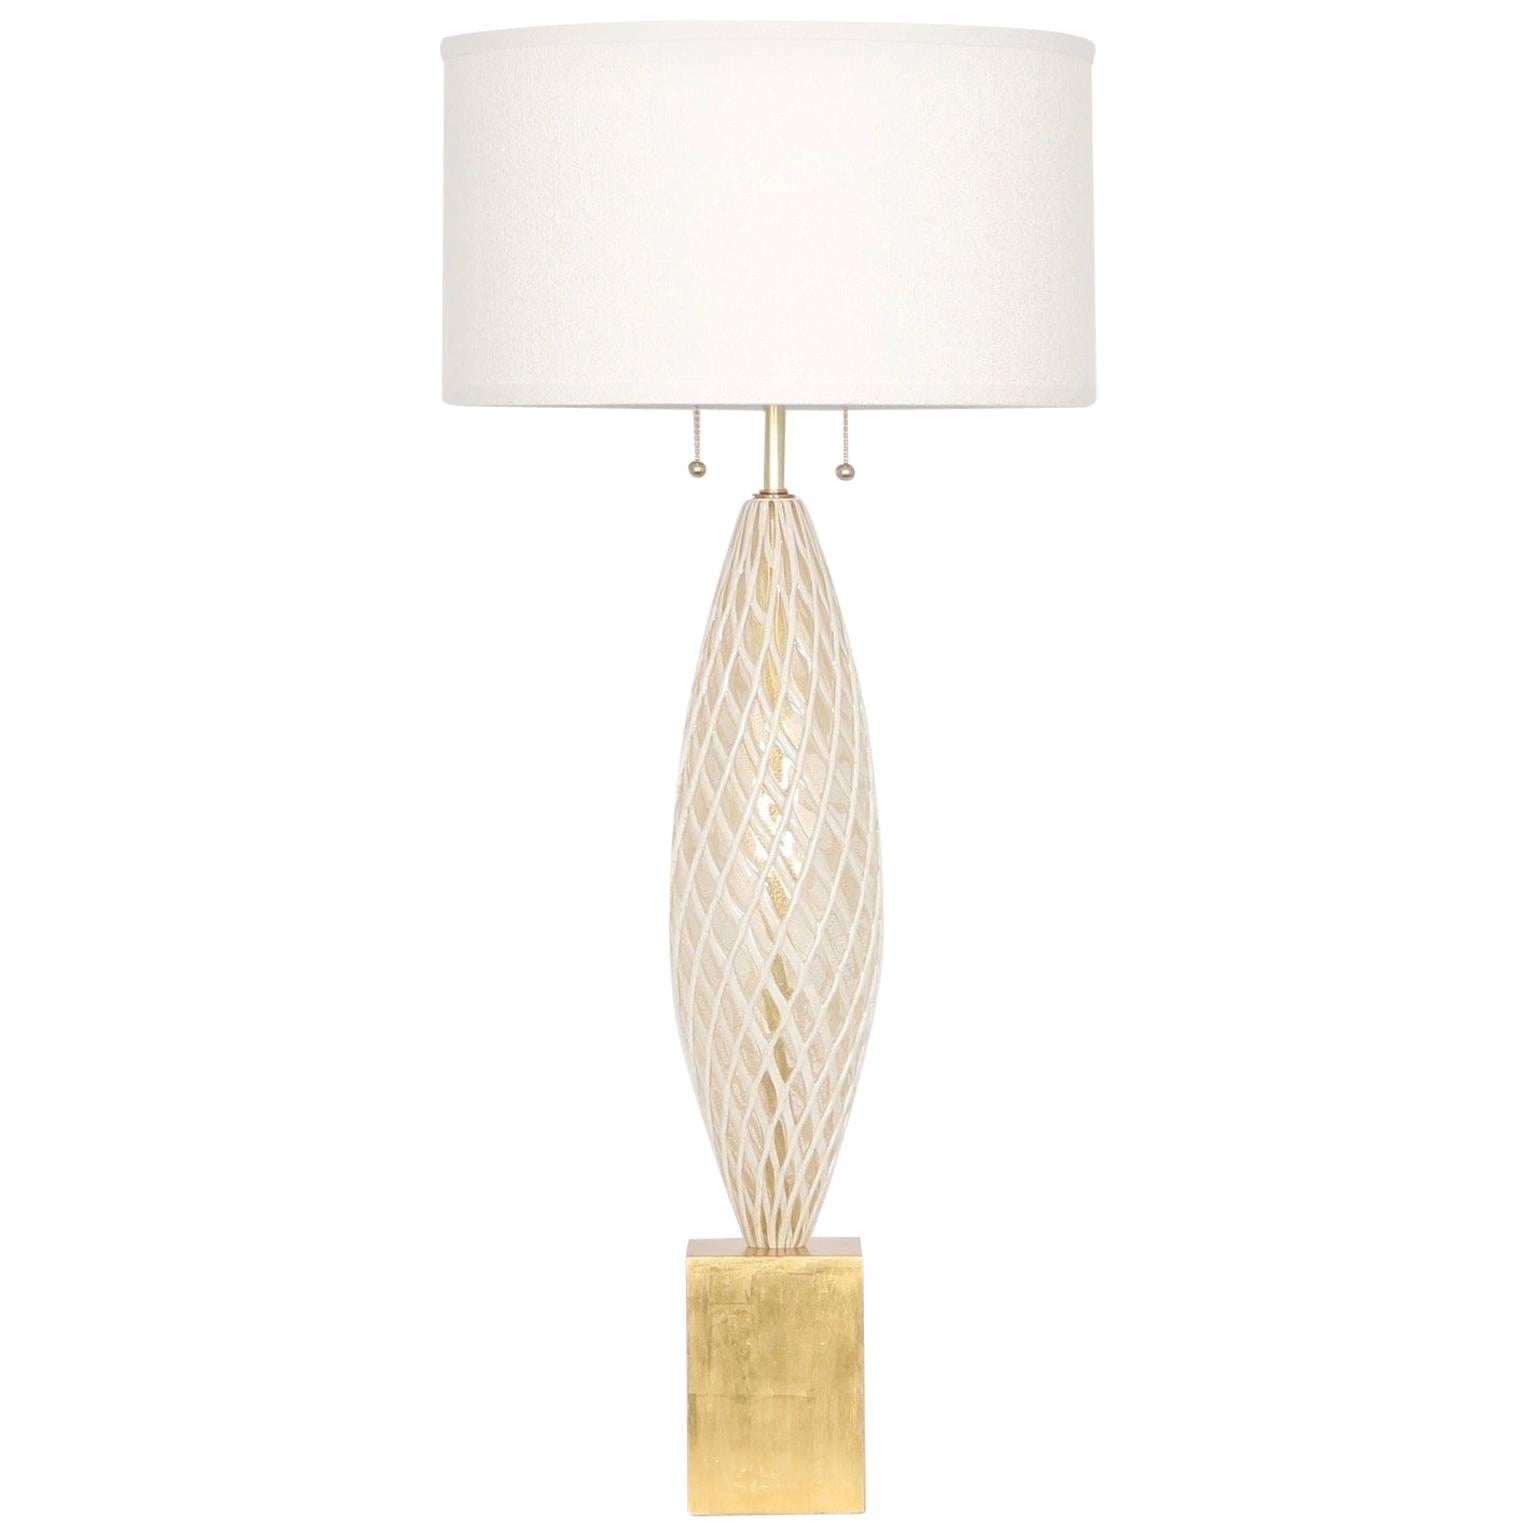 Mid-Century Modern Murano Lamp by Venini